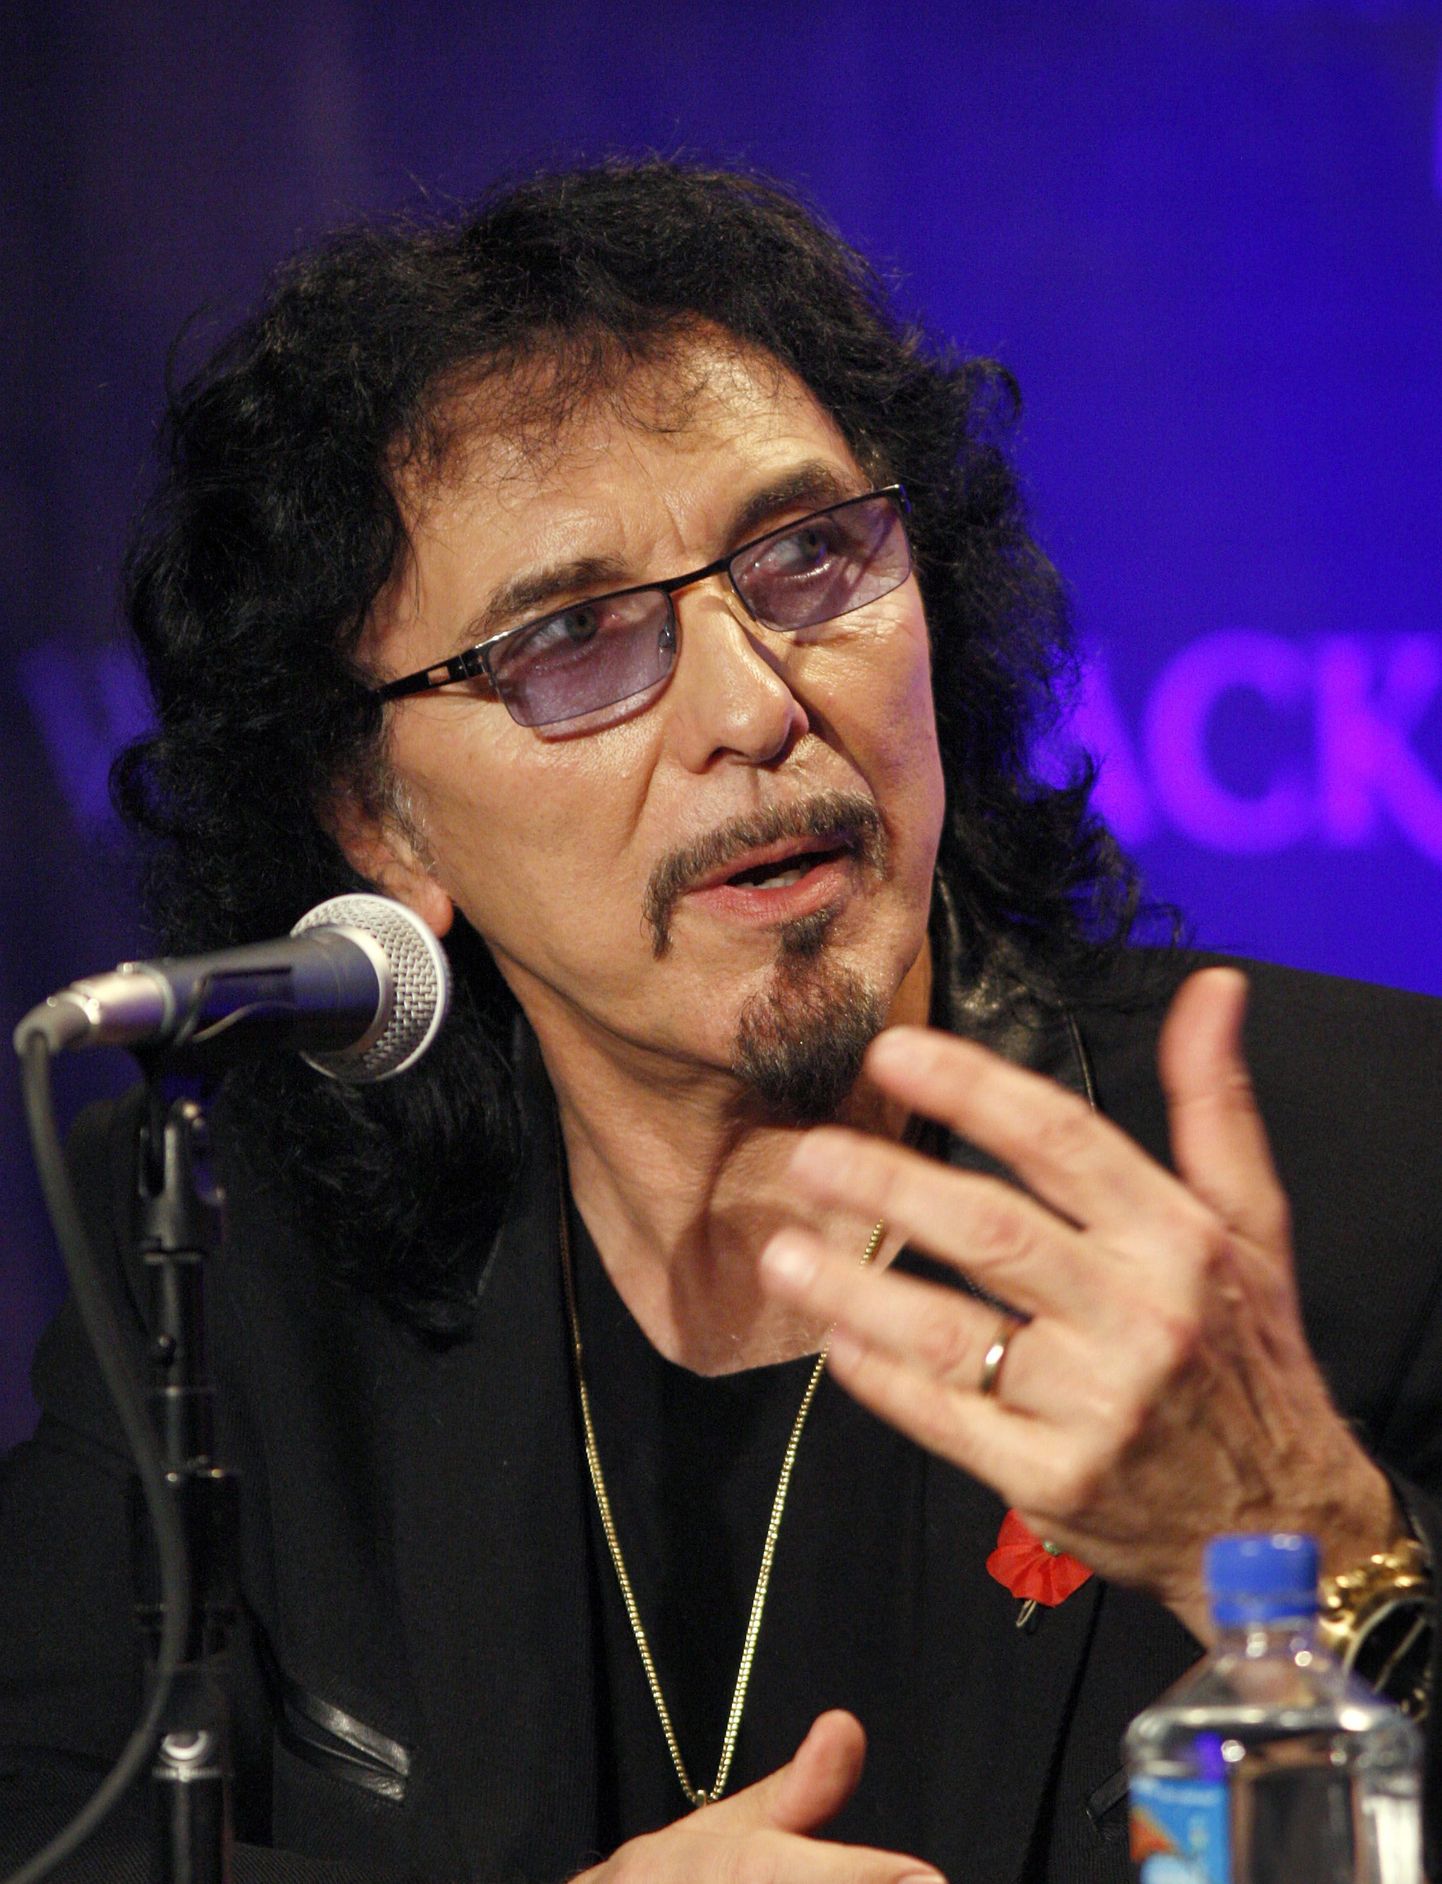 Black Sabbathi kitarrist Tony Iommi